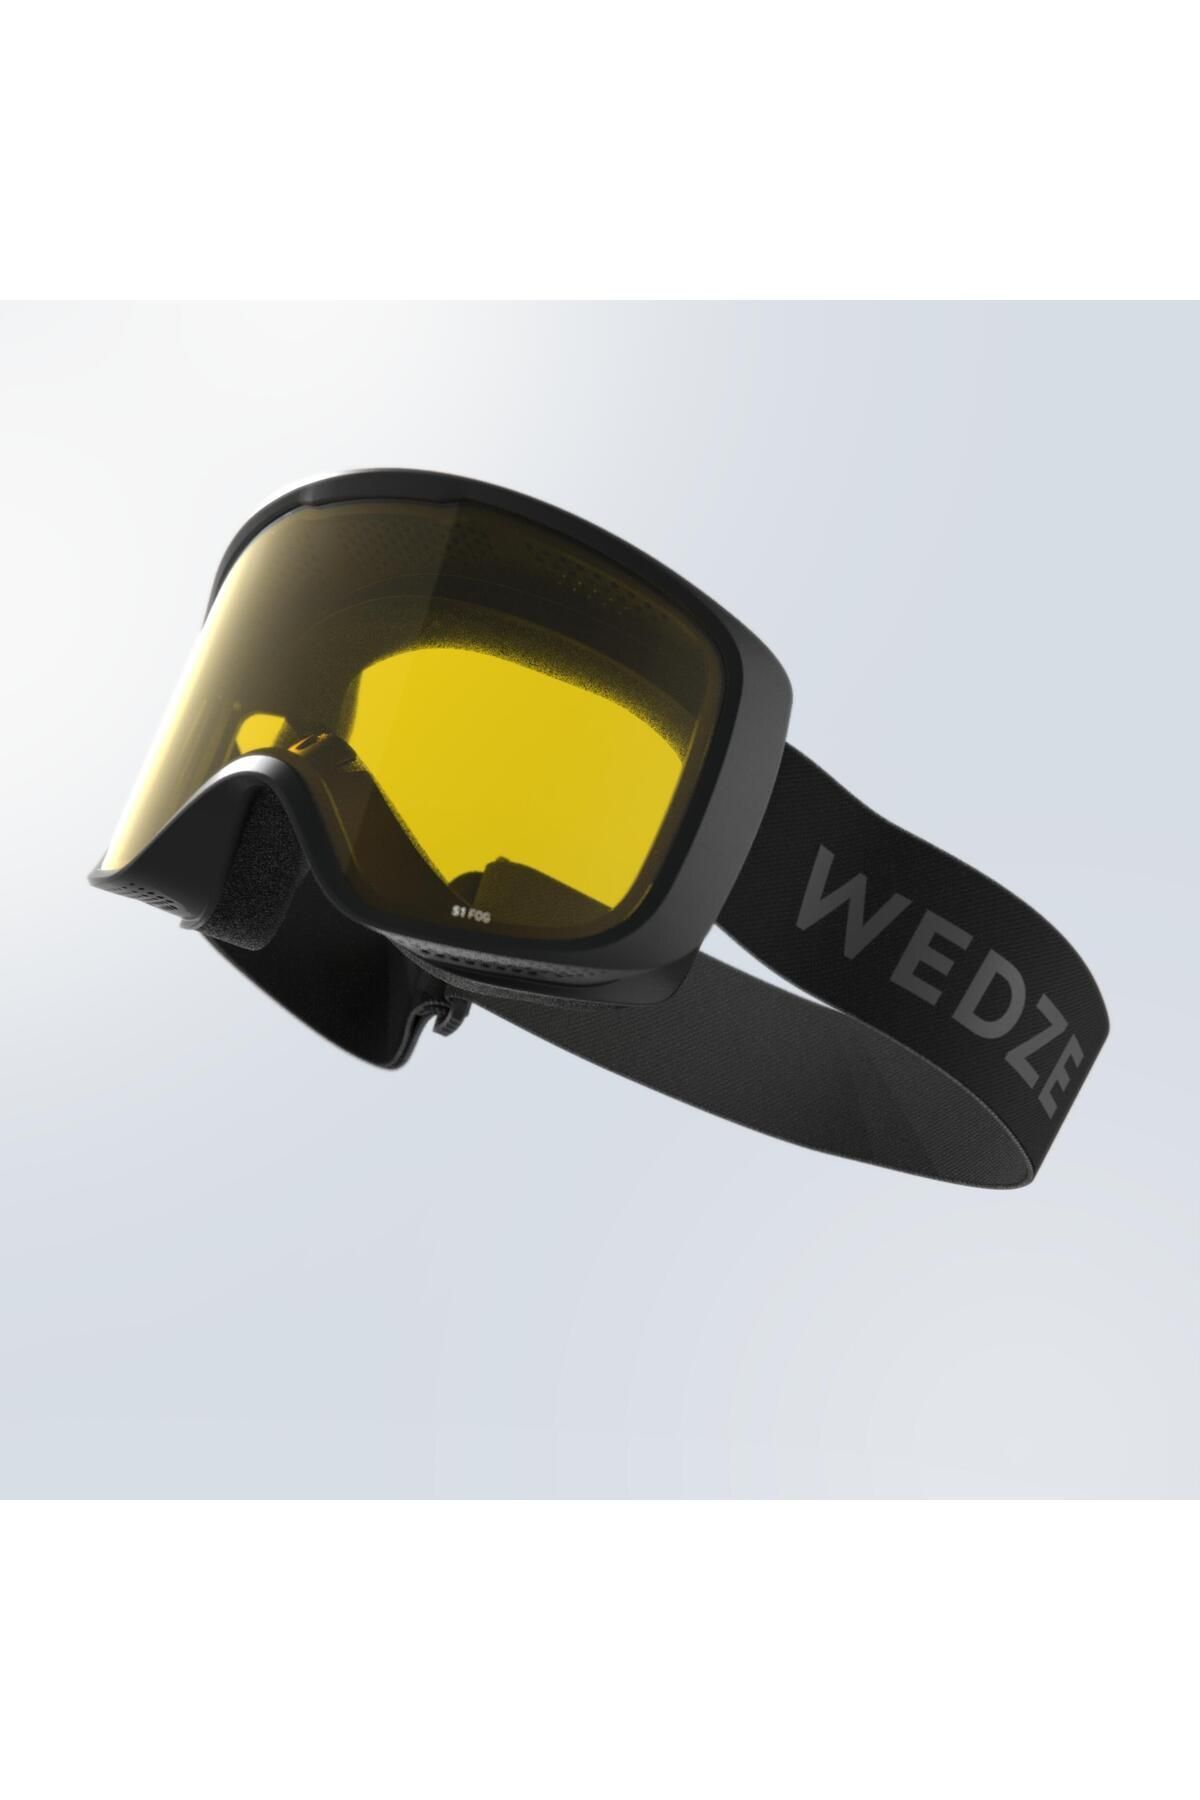 Decathlon Yetişkin Kayak Snowboard Maskesi - Kötü Havalar - Siyah - G100 S1